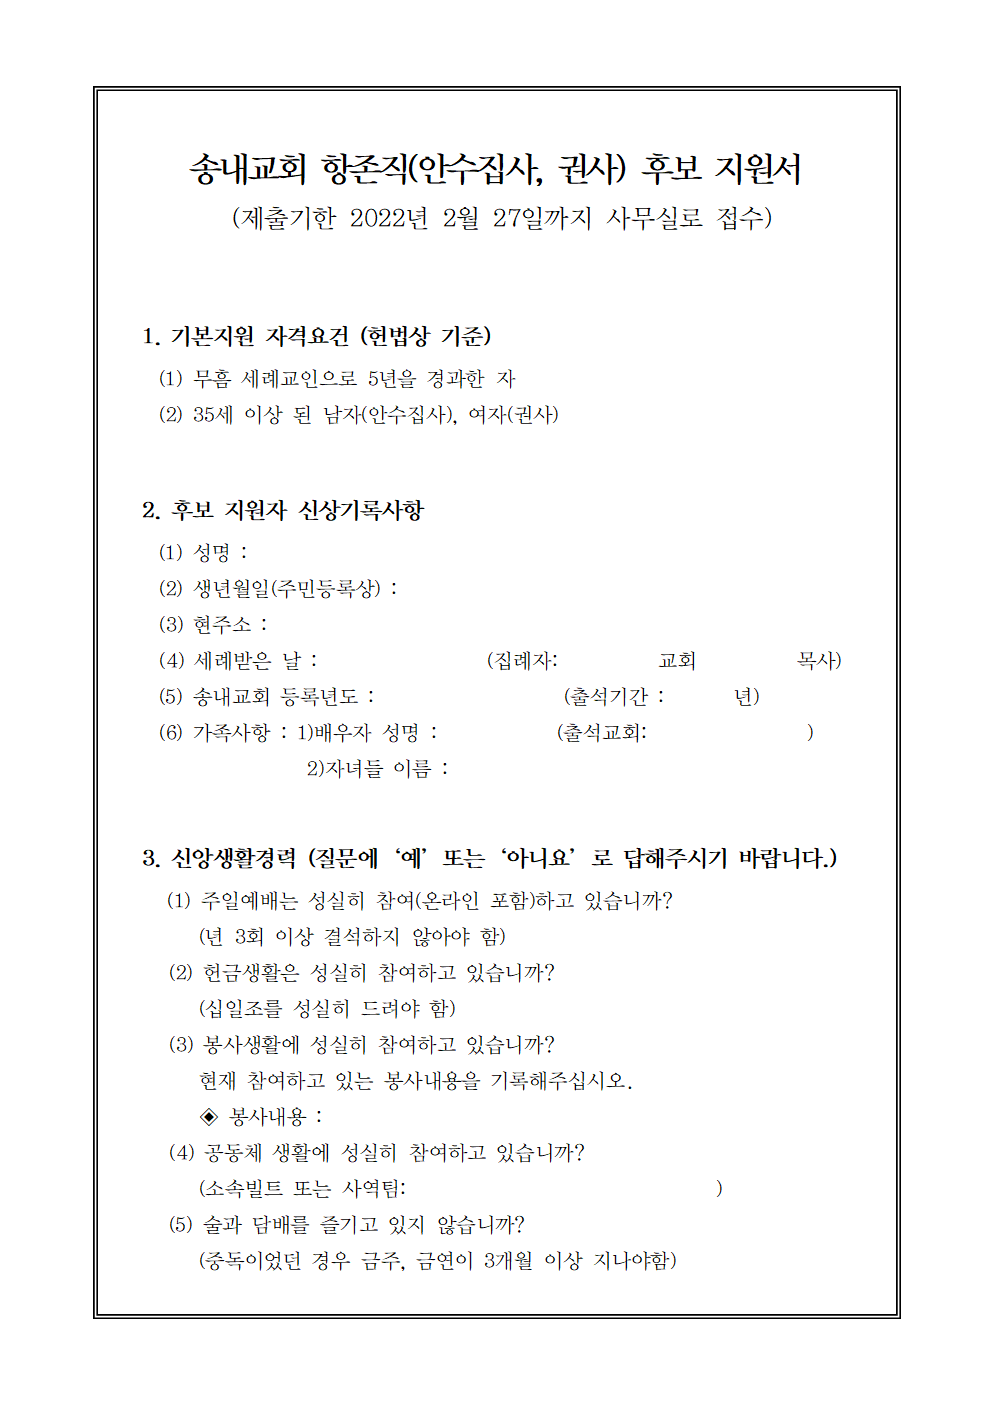 송내교회 안수집사.권사 후보 지원서 (1)001.png